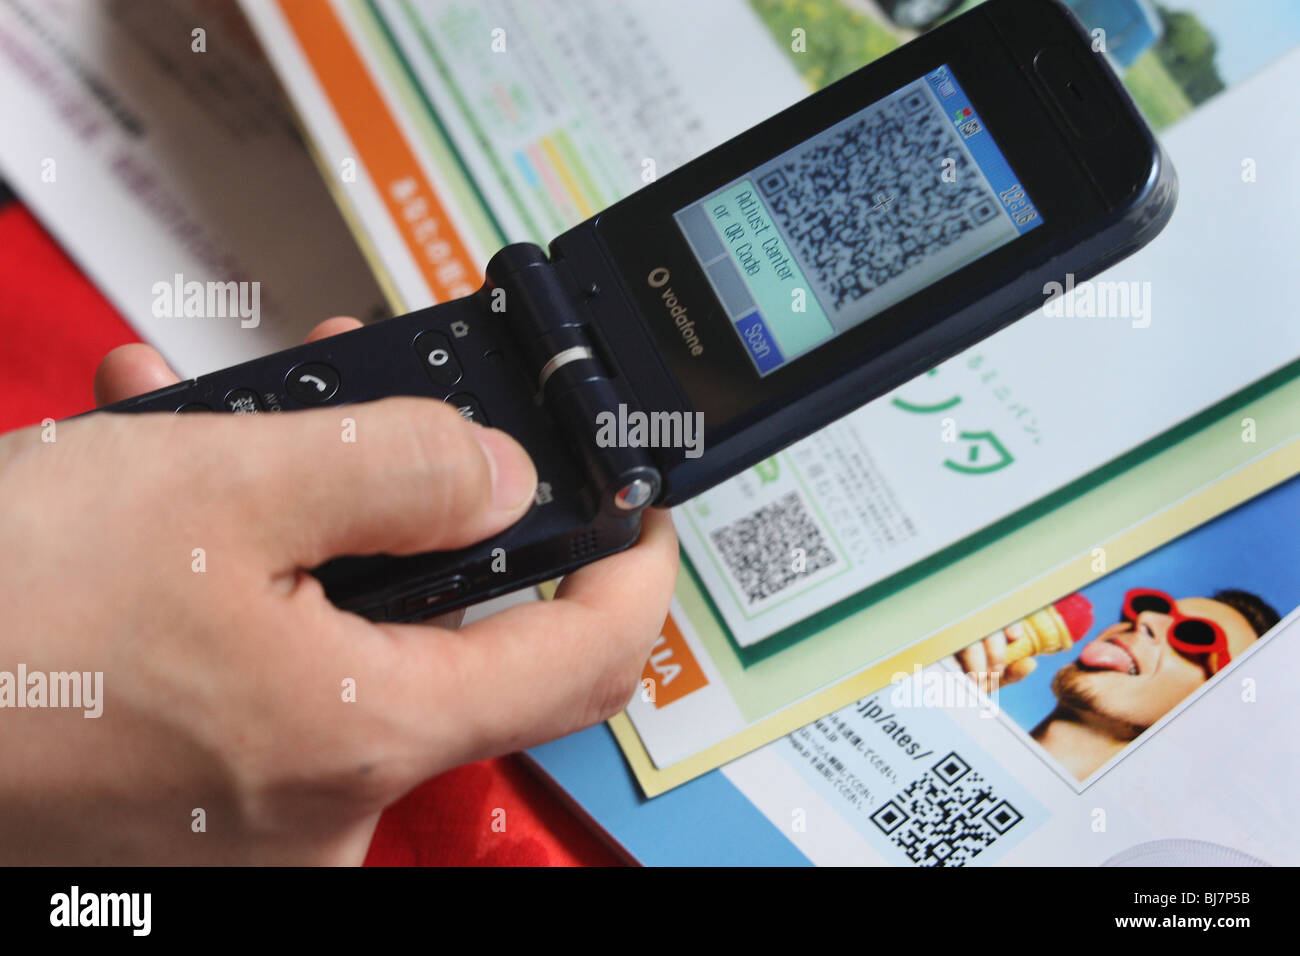 À l'aide d'un téléphone mobile pour scanner un code QR' ( 'une matrice de  points carrés code-barres) pour activer le téléphone pour télécharger une  page web Photo Stock - Alamy